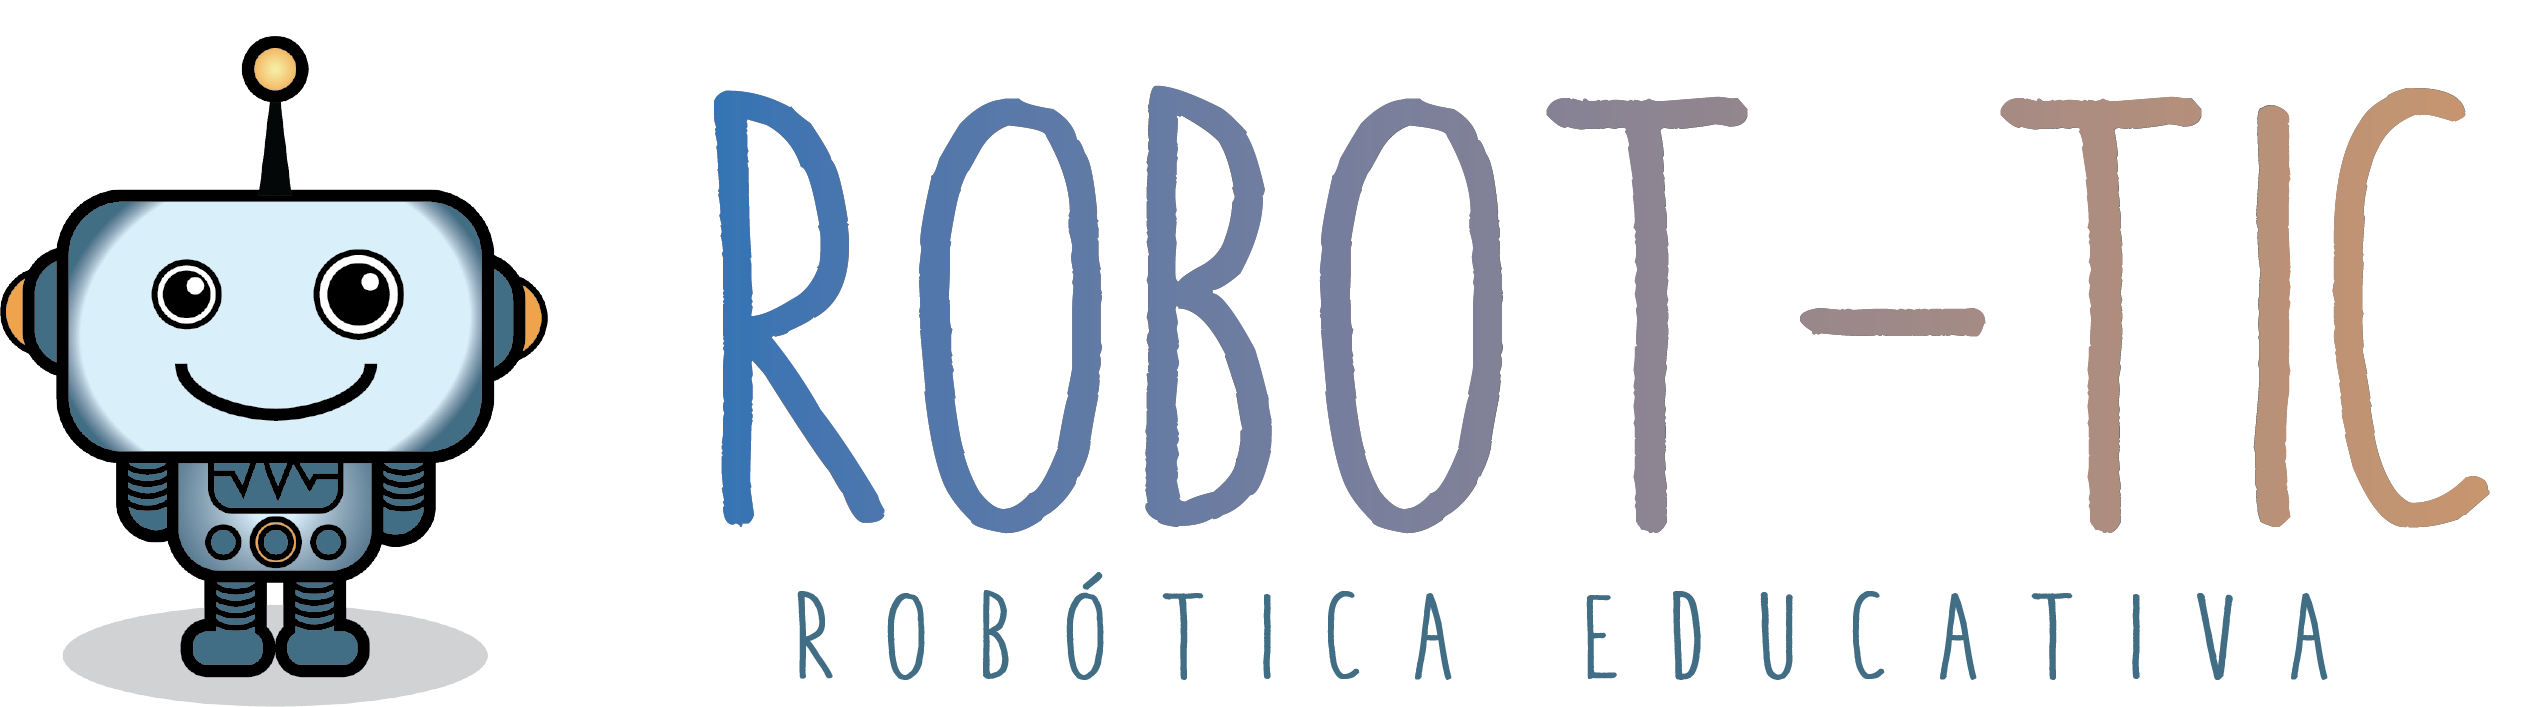 Robot-Tic: Todo lo necesitas de robótica educativa.